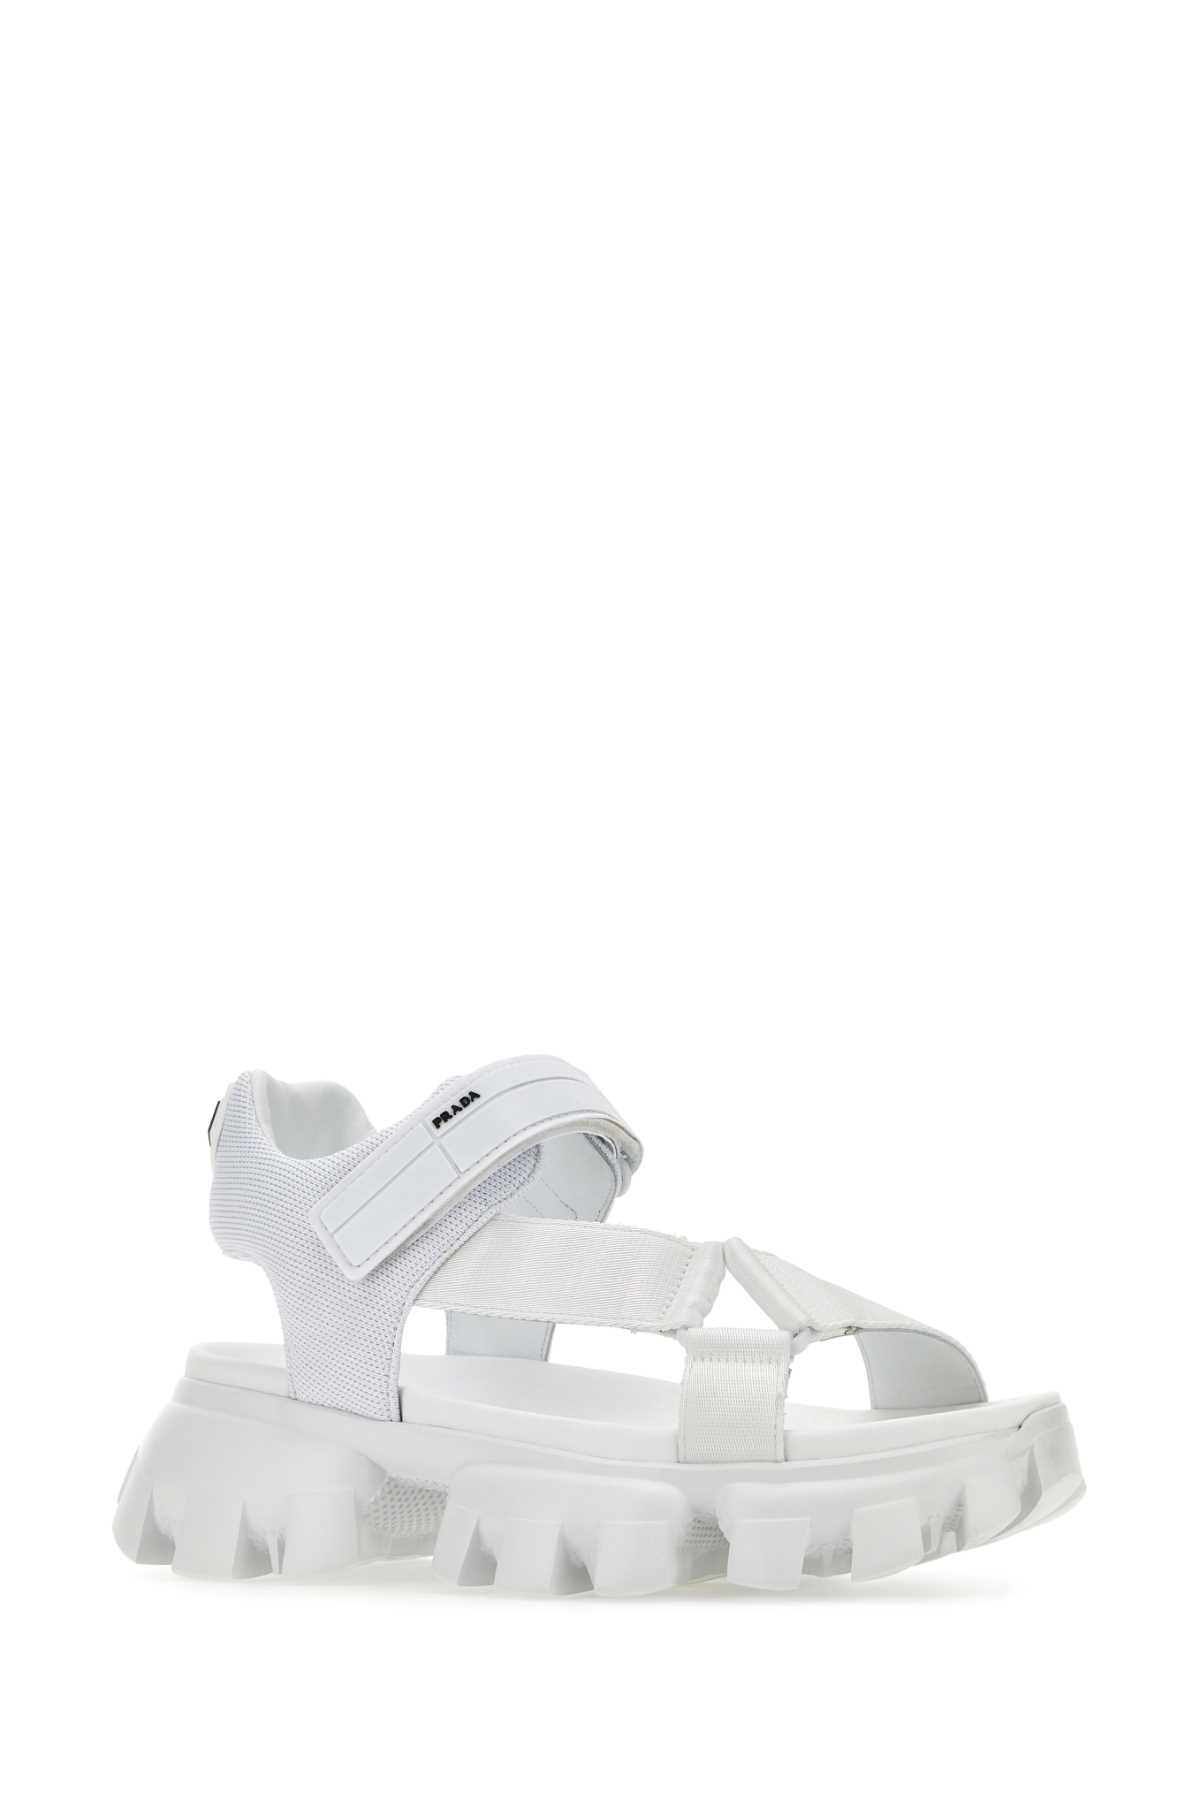 Shop Prada White Nylon Sandals